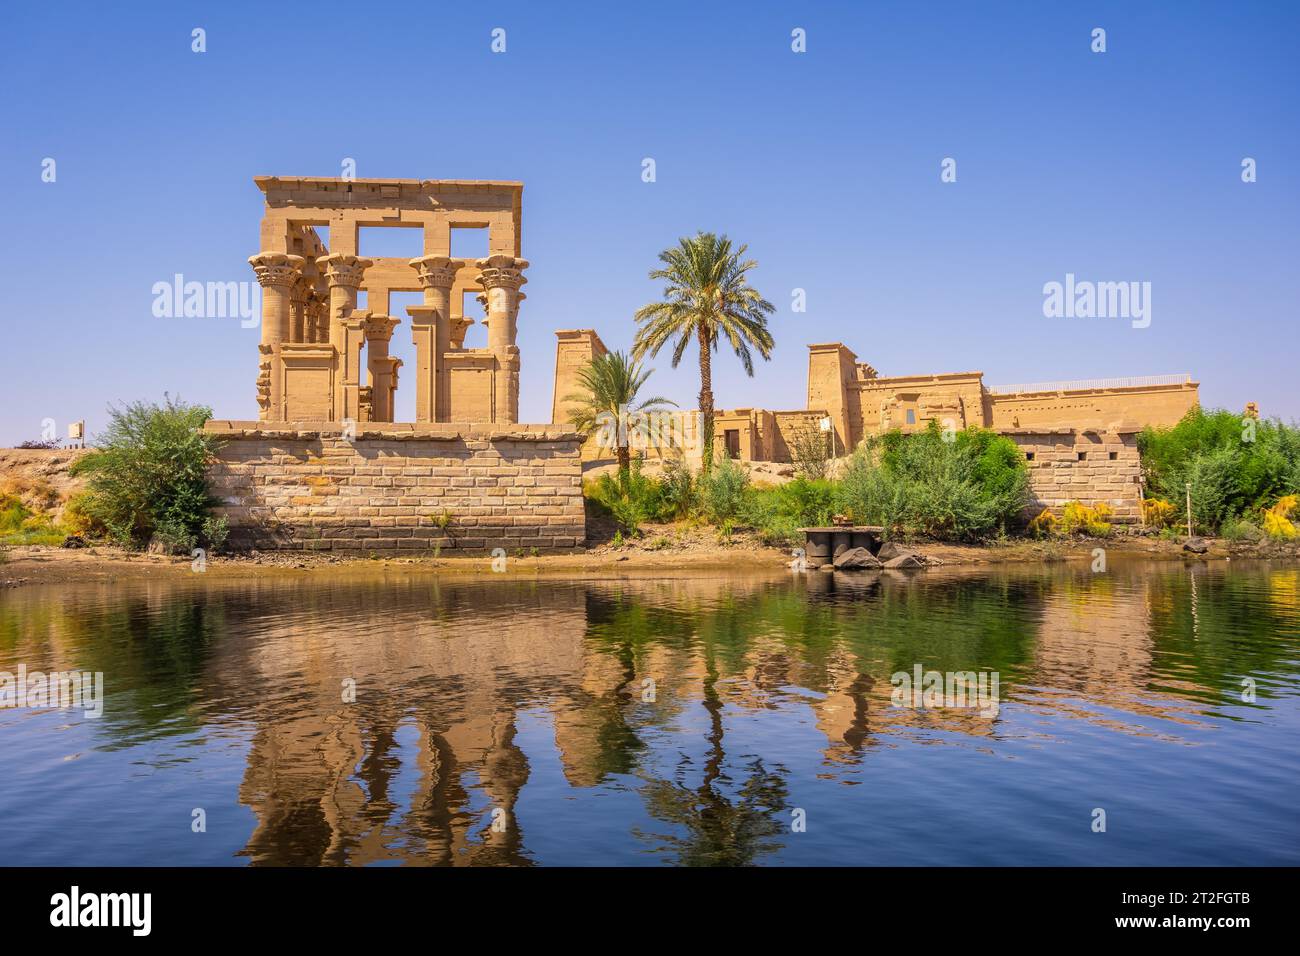 Der wunderschöne Tempel von Philae und die griechisch-römischen Gebäude vom Nil aus gesehen, ein Tempel, der Isis, der Göttin der Liebe, gewidmet ist. Assuan. Ägyptisch Stockfoto